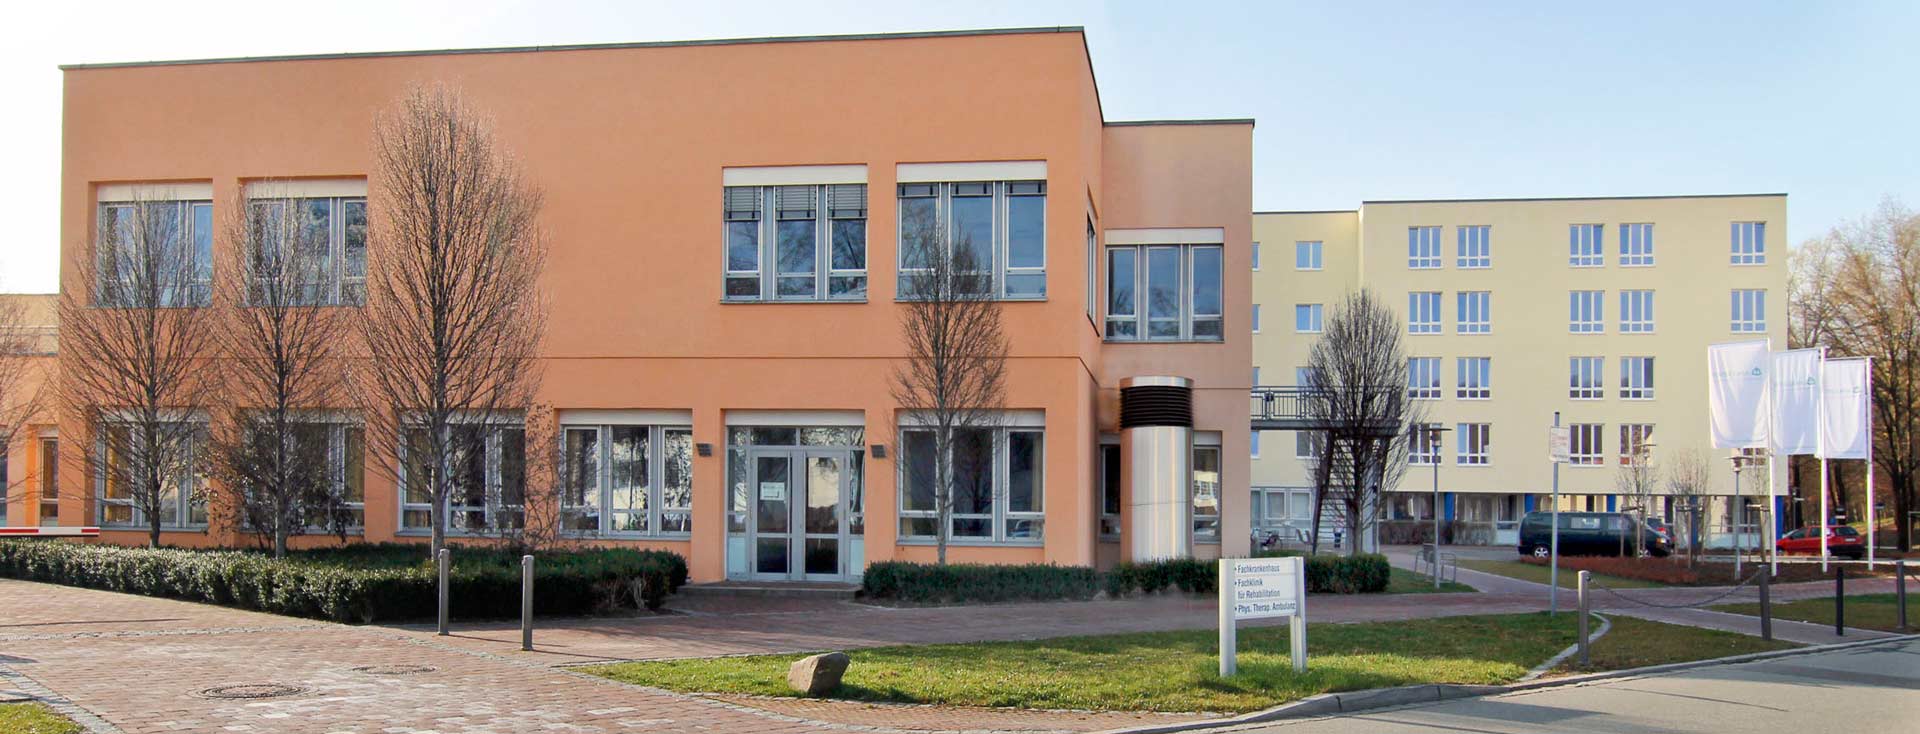 Die Asklepios-Klinik in Bad Abbach (Foto: Asklepios-Klinik Bad Abbach)